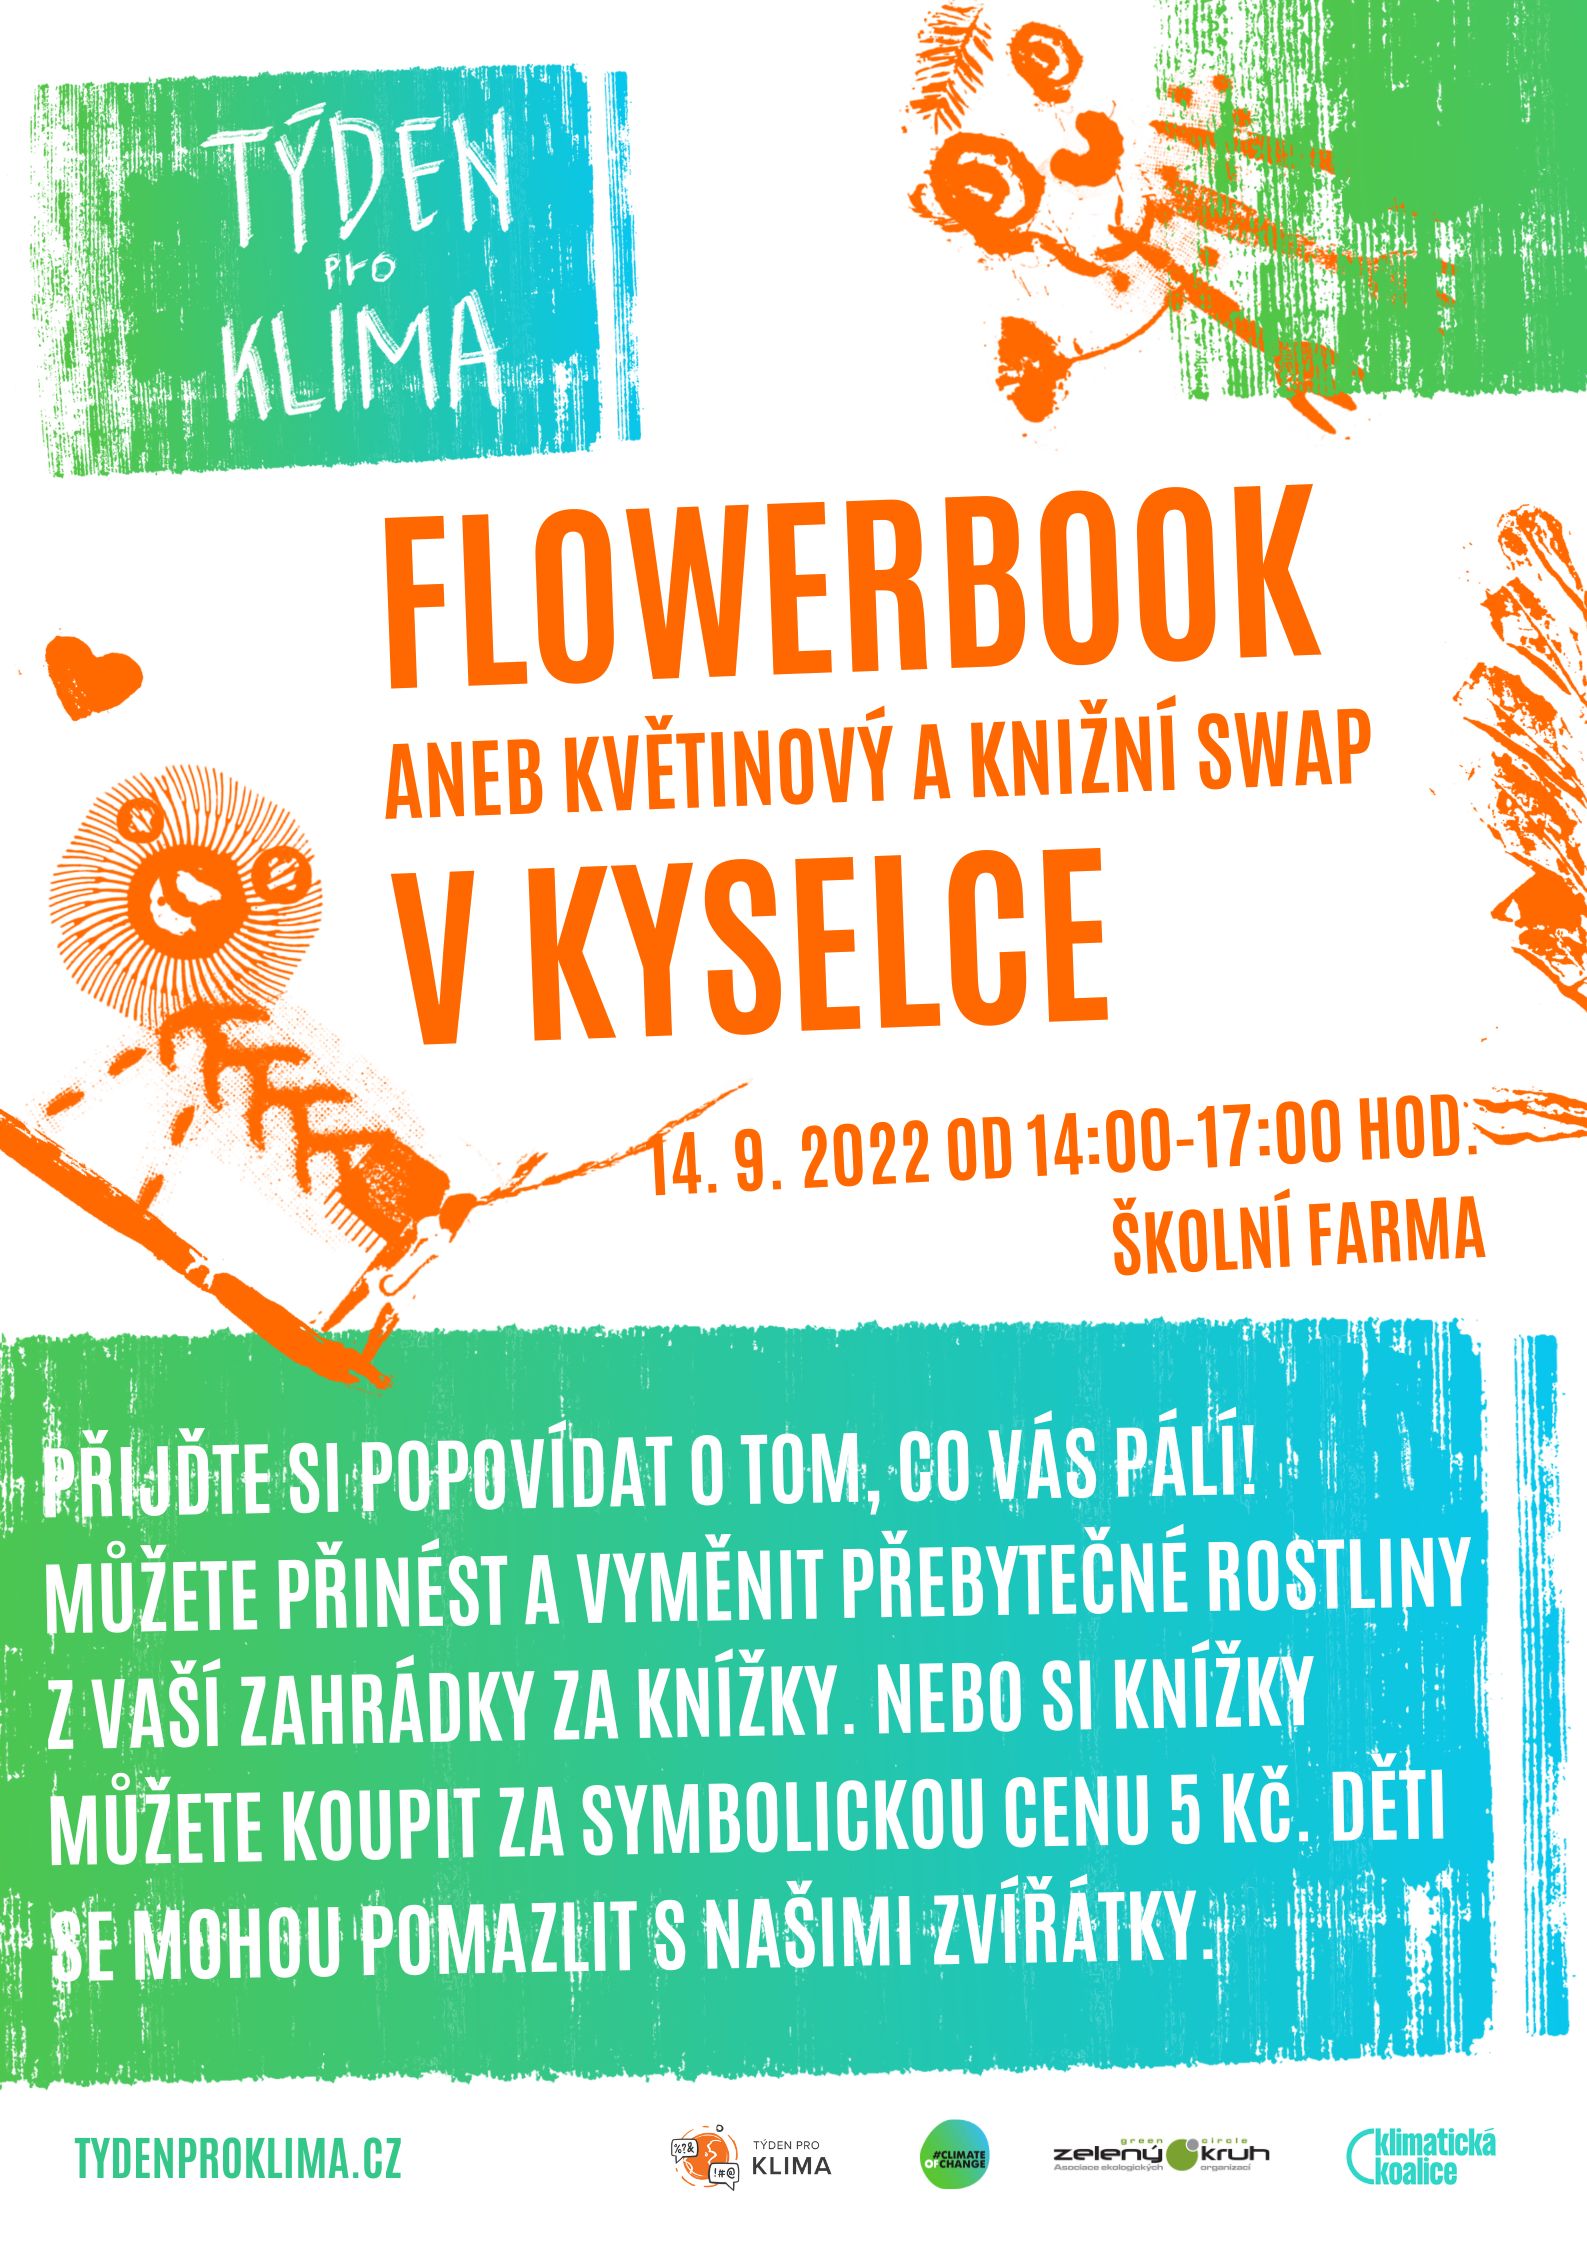 Flowerbook